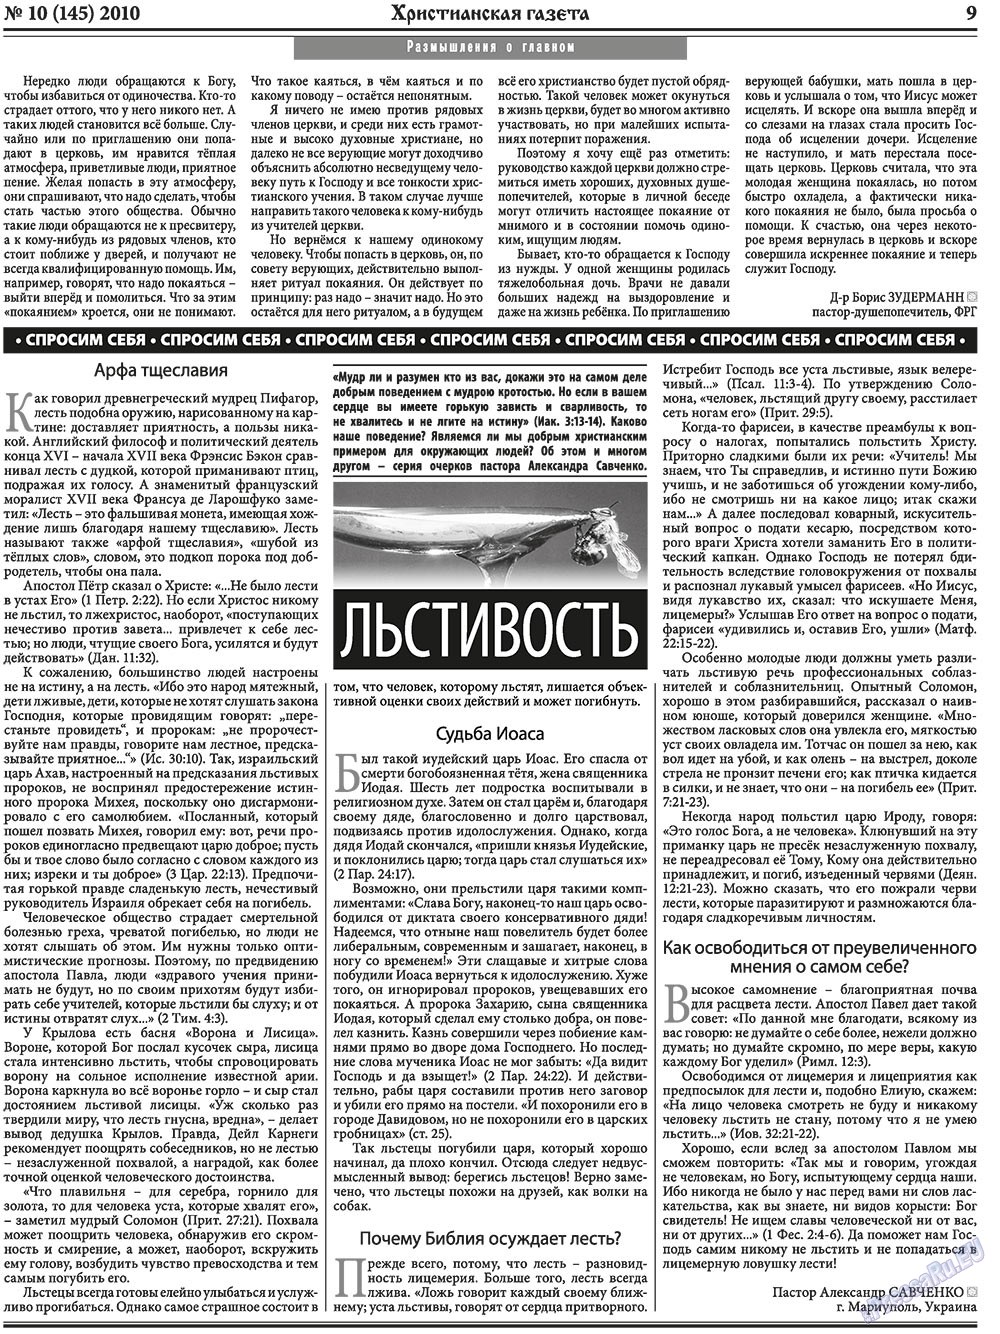 Христианская газета (газета). 2010 год, номер 10, стр. 9